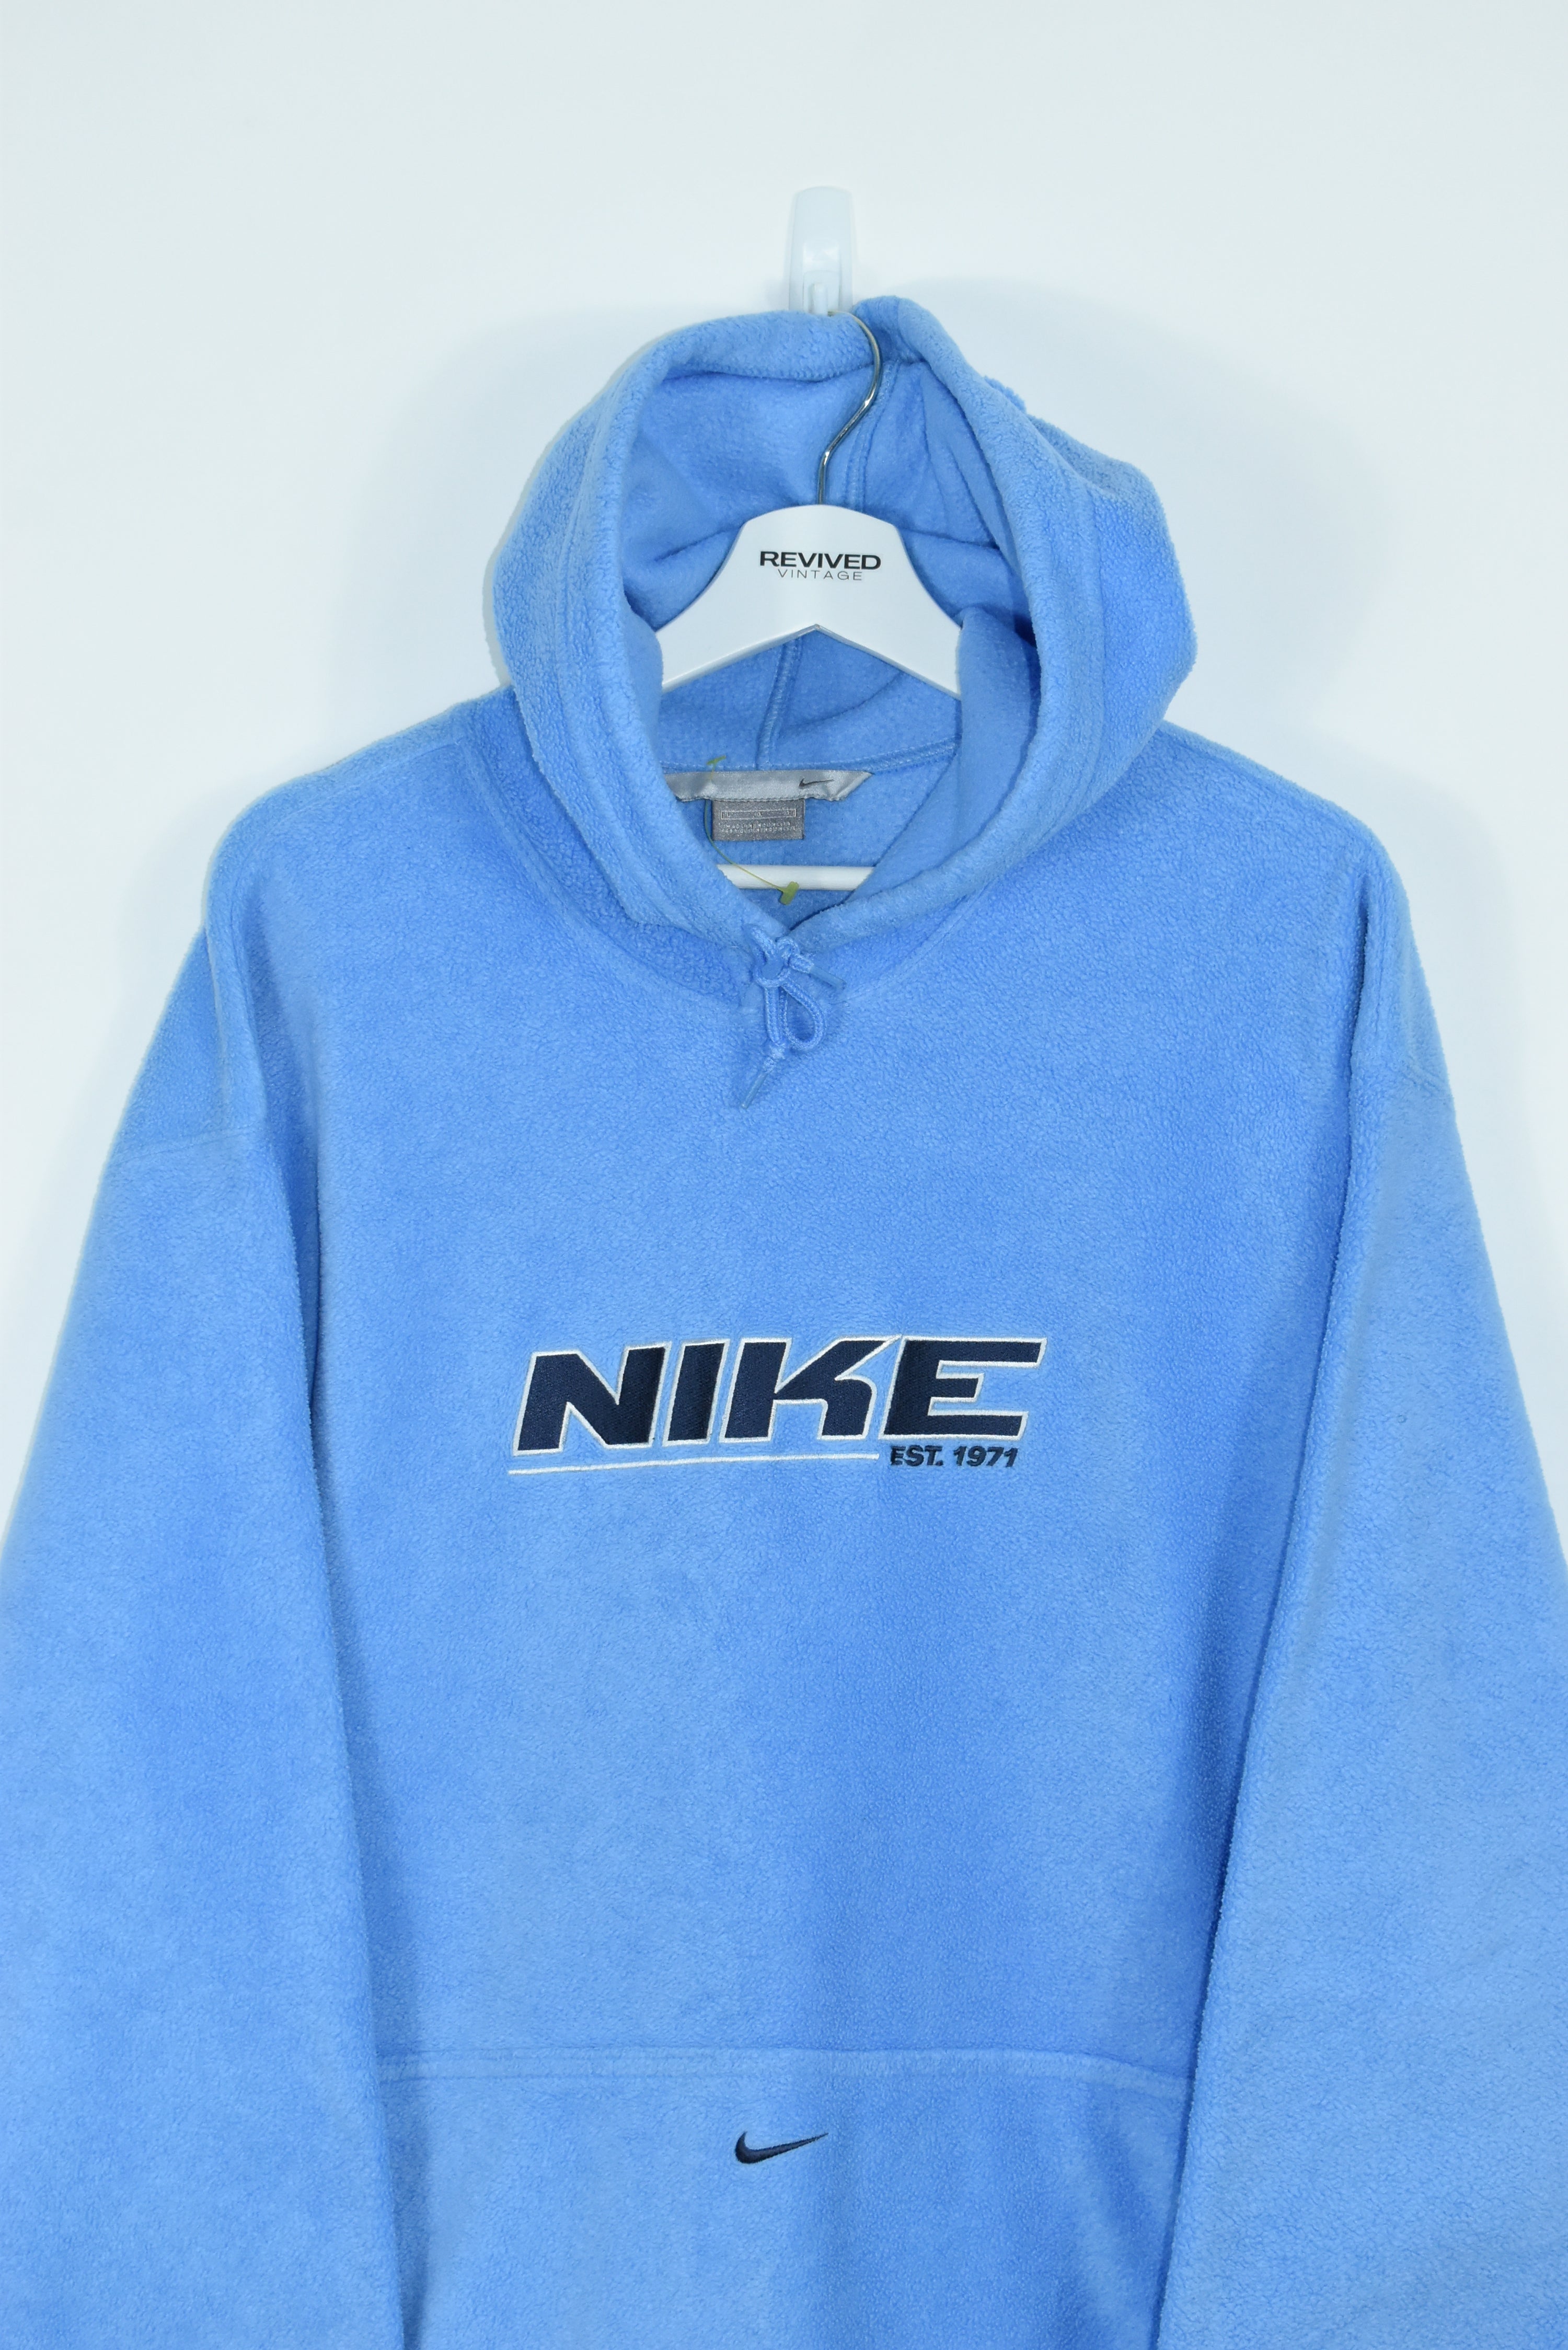 Vintage Nike Baby Blue Fleece Hoodie Xlarge